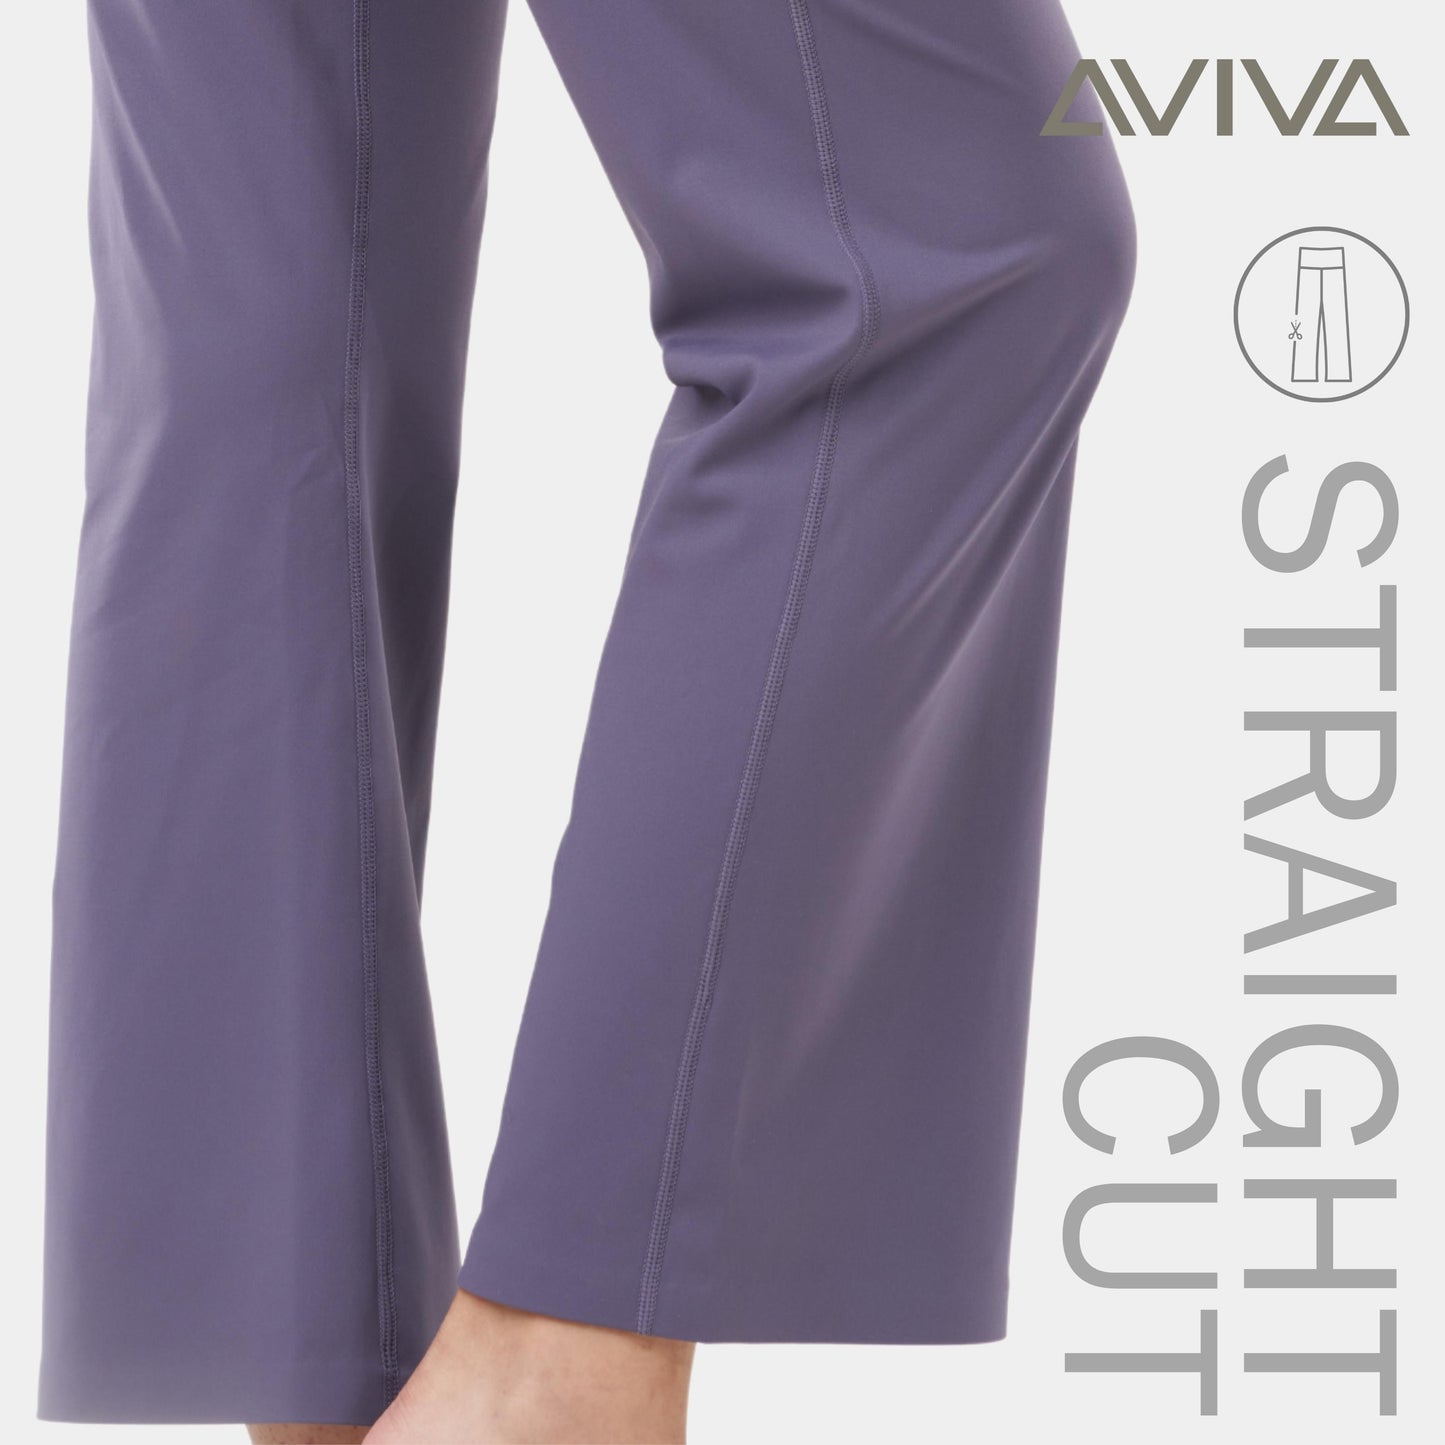 AVIVA Maximum Tummy Control Straight Cut Long Pants (81-4190)